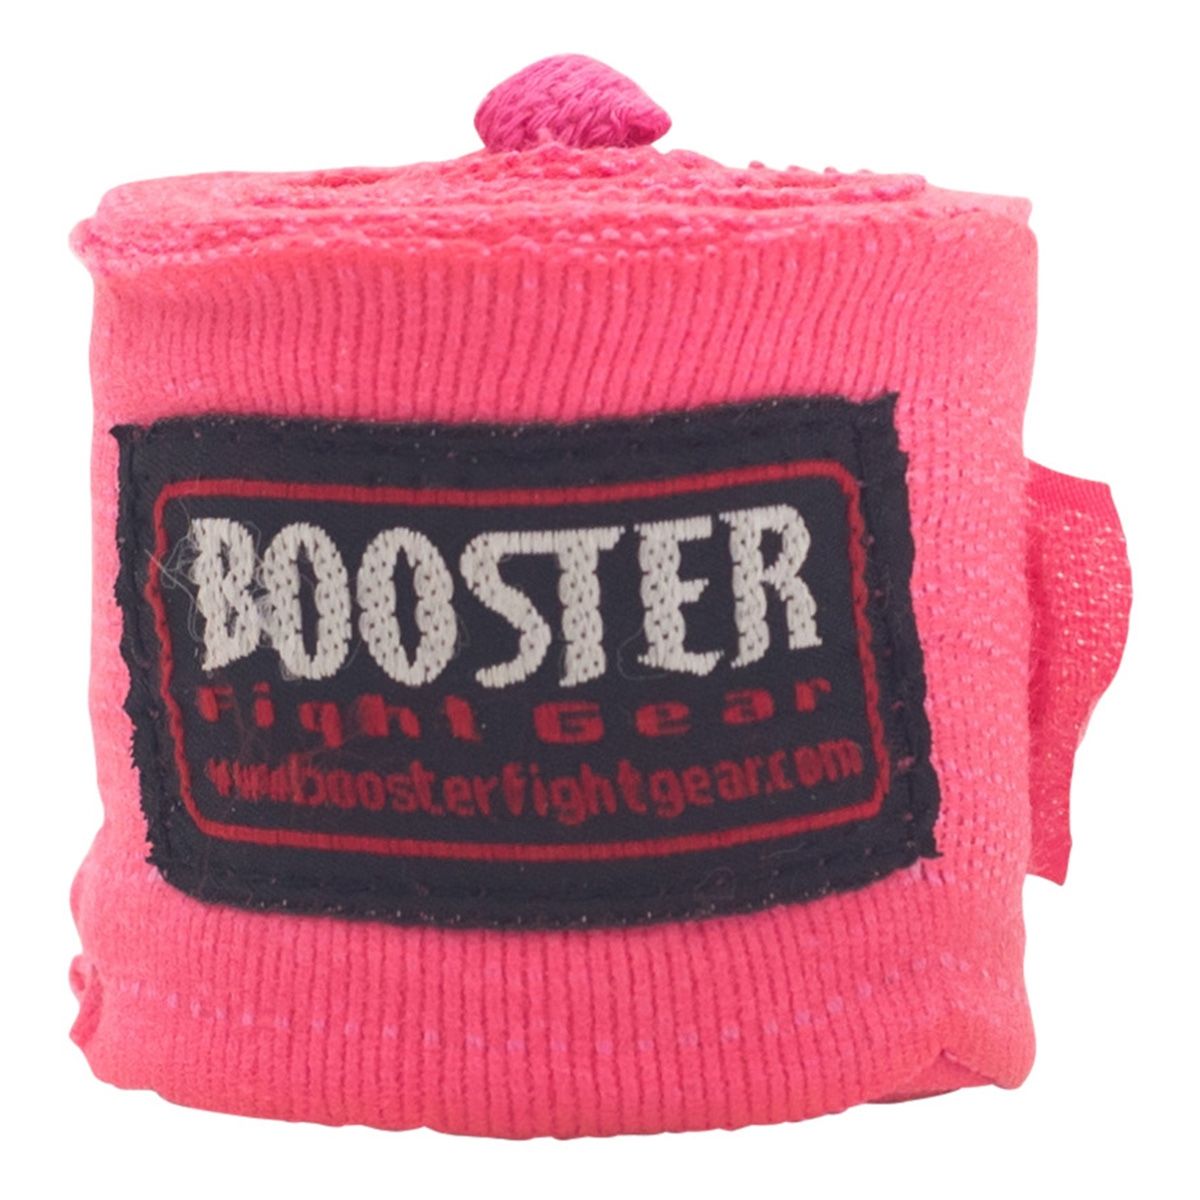  Booster Fight Gear BPC Roze Bandages - Stijl & Bescherming